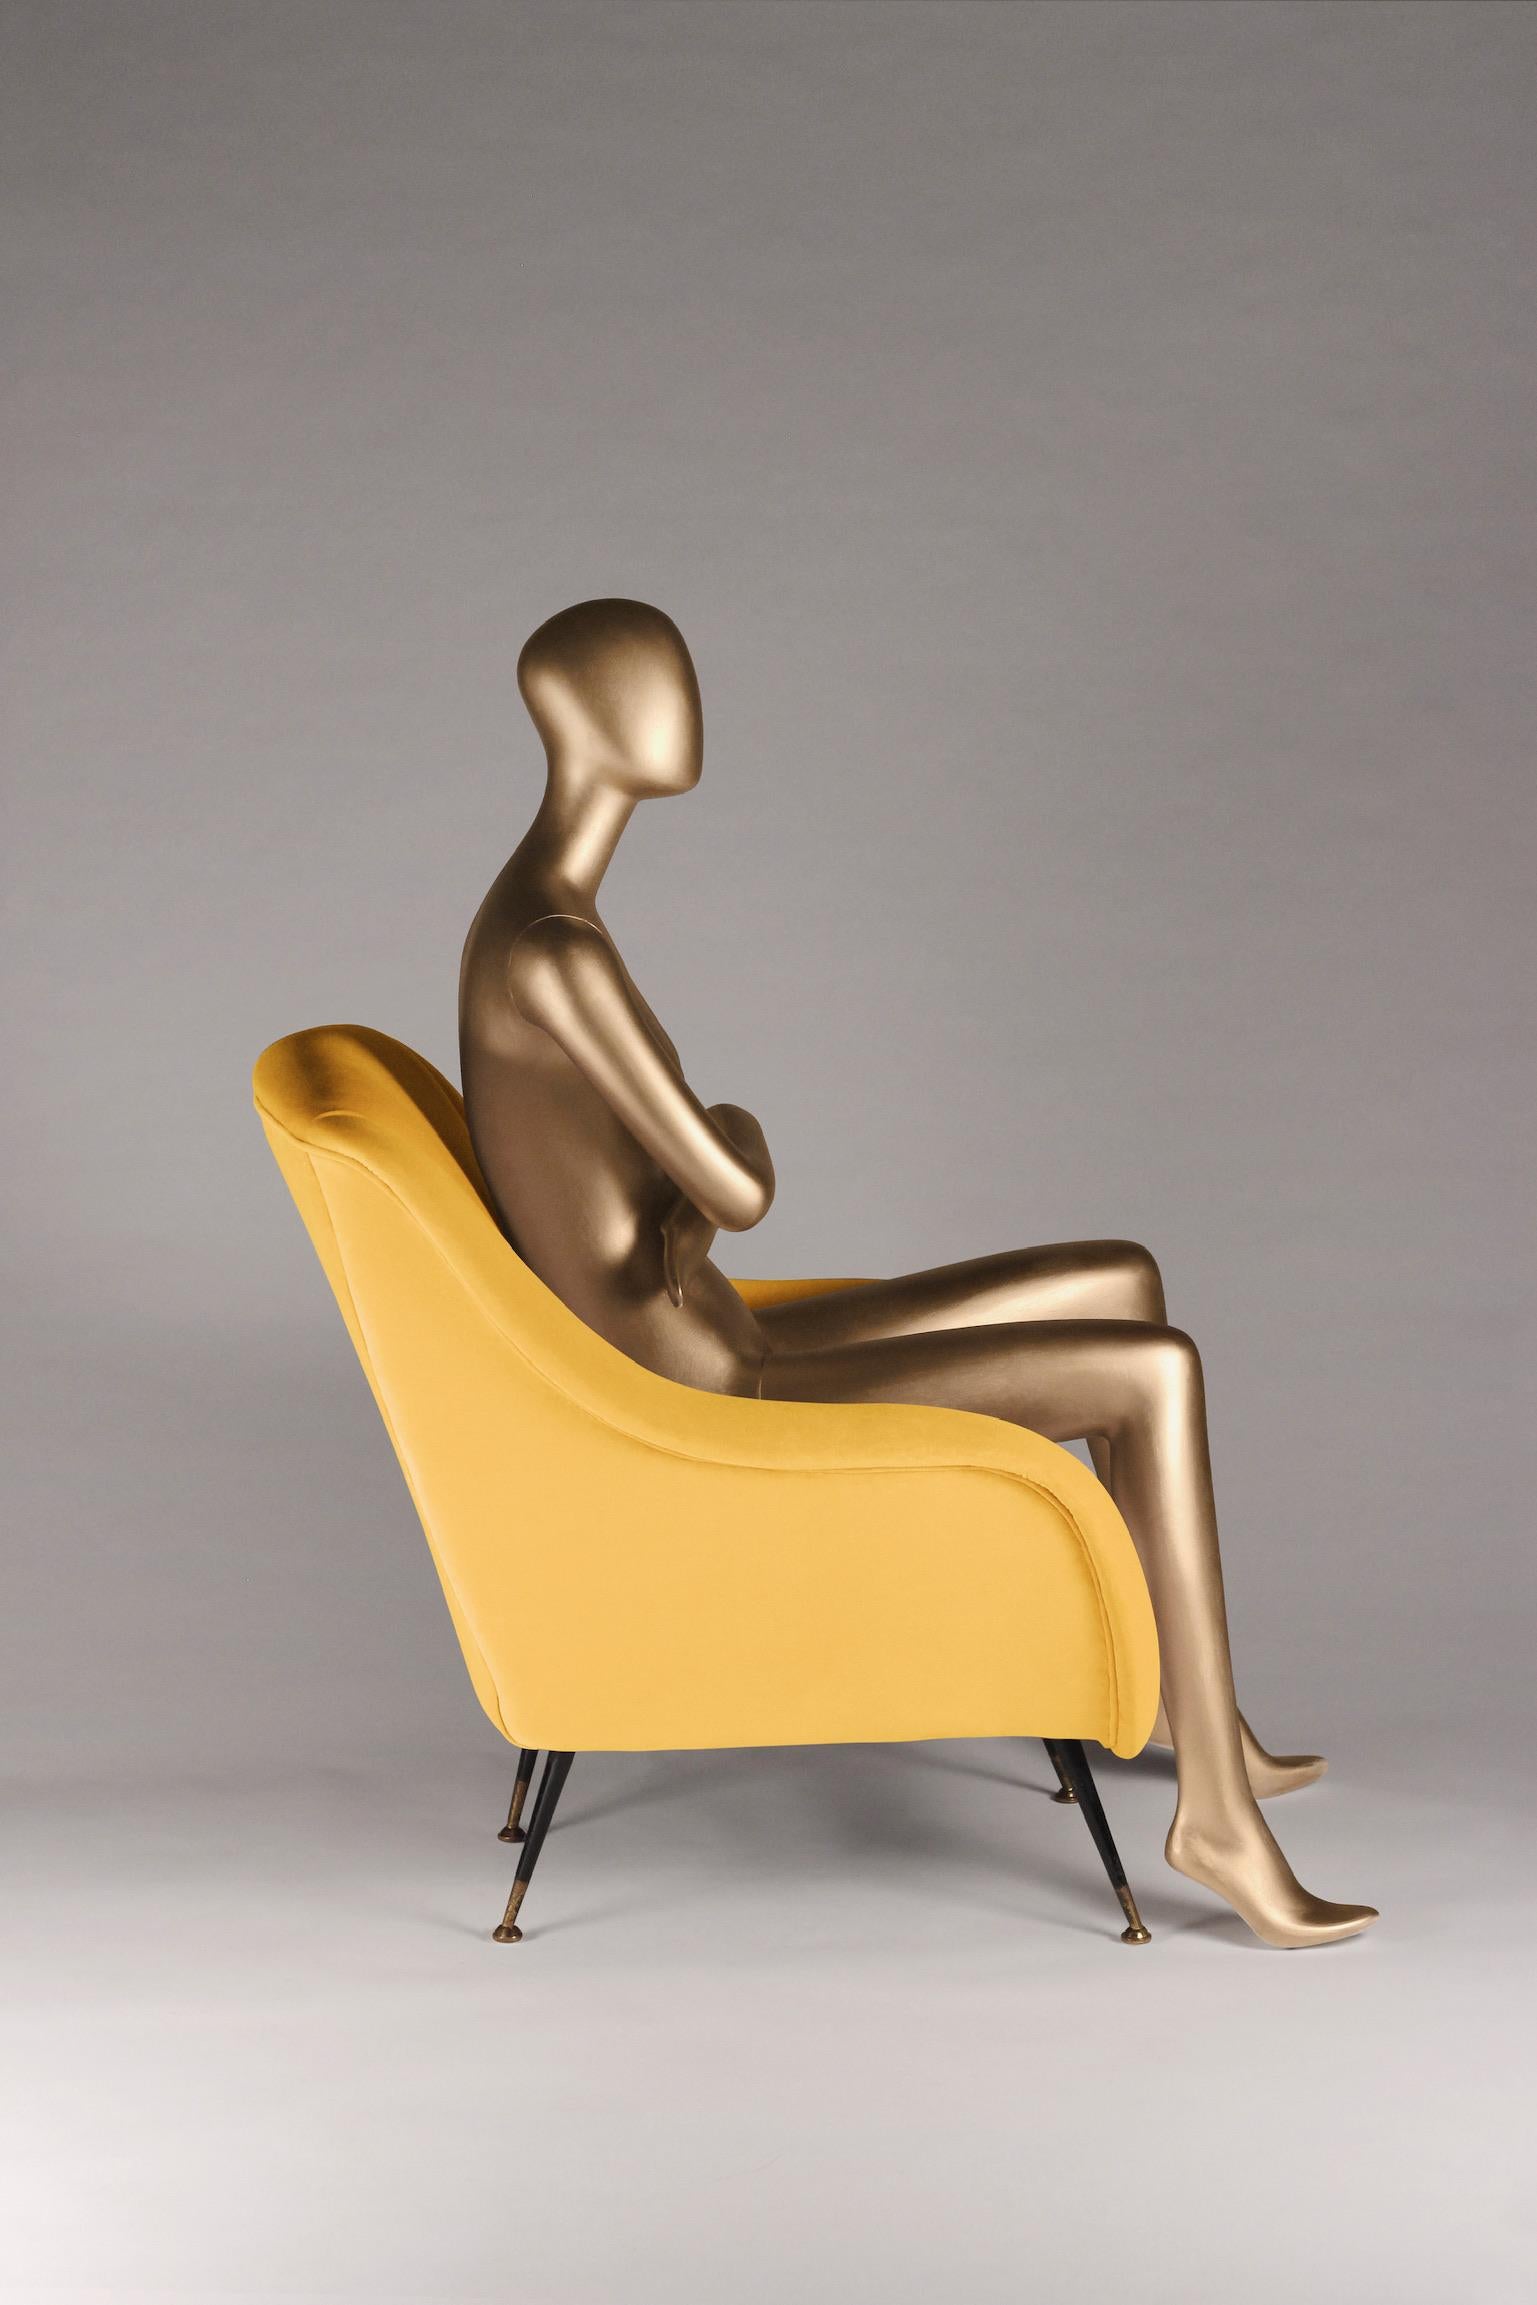 Sophia wurde vom stilvollen italienischen Design der 1950er Jahre inspiriert und wird nun von englischen Handwerkern für das 21. Wir haben einen Loungesessel entwickelt, der in beliebiger Anzahl nach Ihren Stoffvorgaben gefertigt werden kann. Der